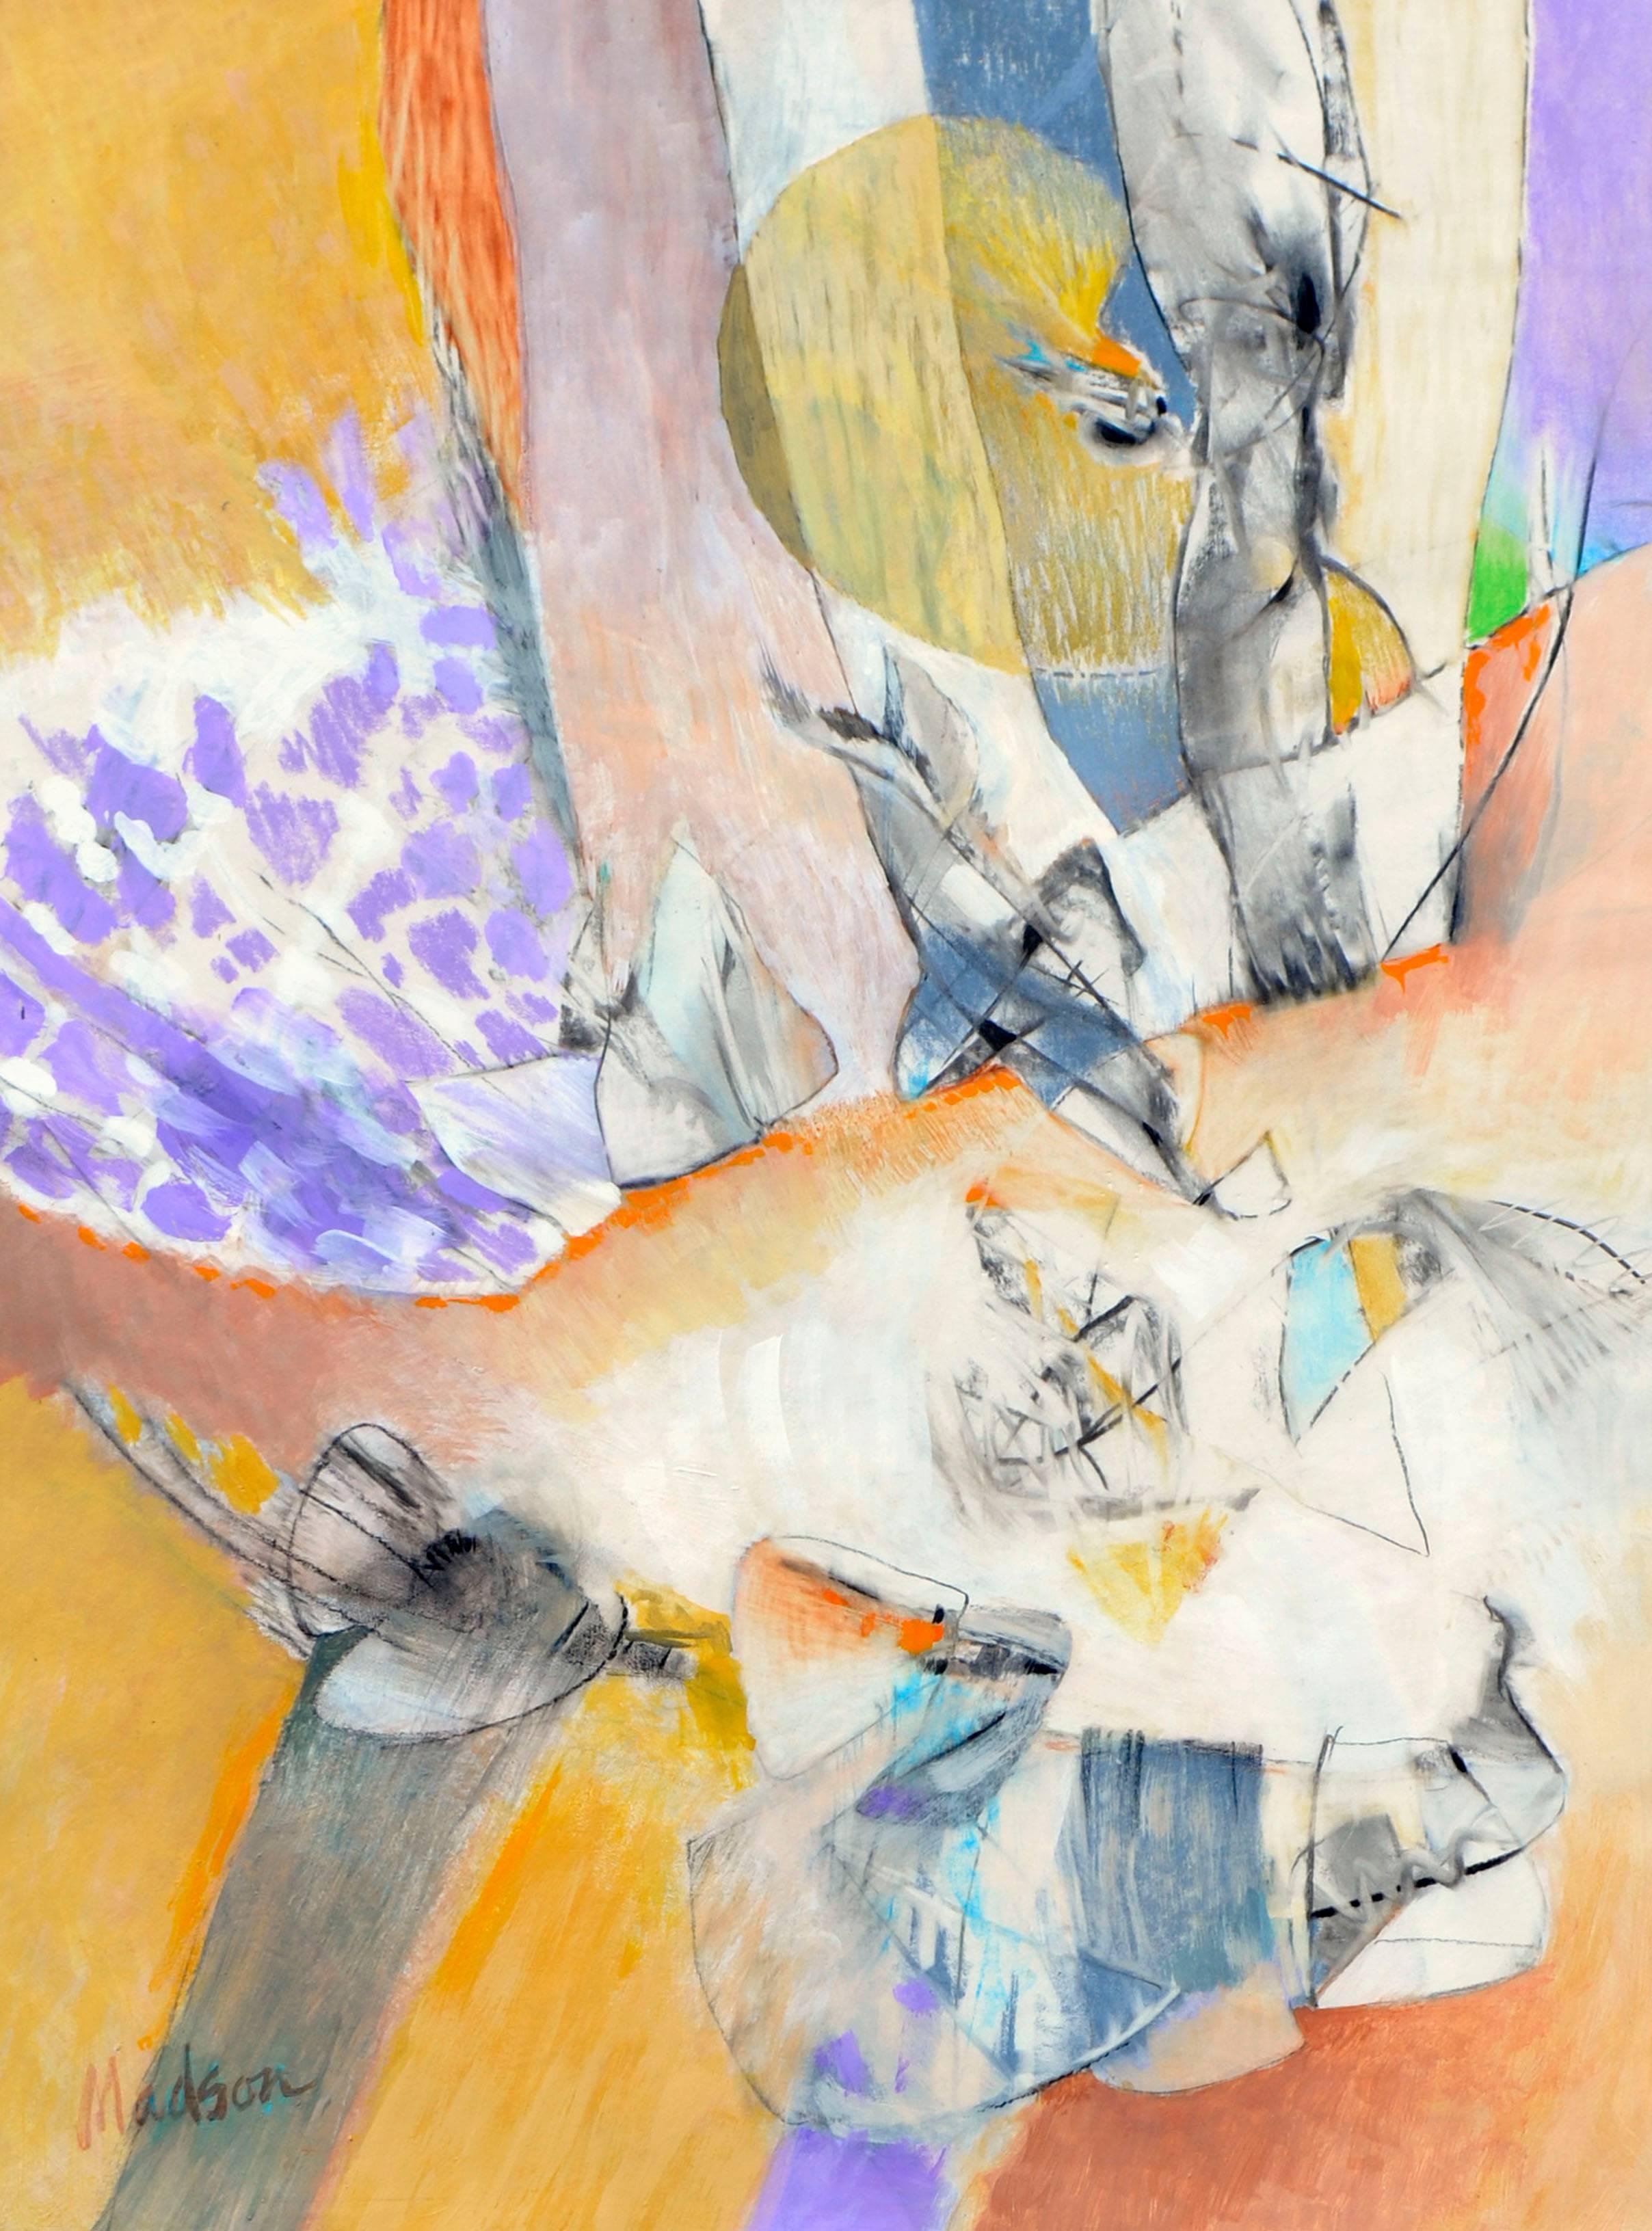 Reflektionen Abstrakt - Zweiseitiges abstraktes expressionistisches Gemälde auf Papier (Abstrakter Expressionismus), Painting, von Jack Madson